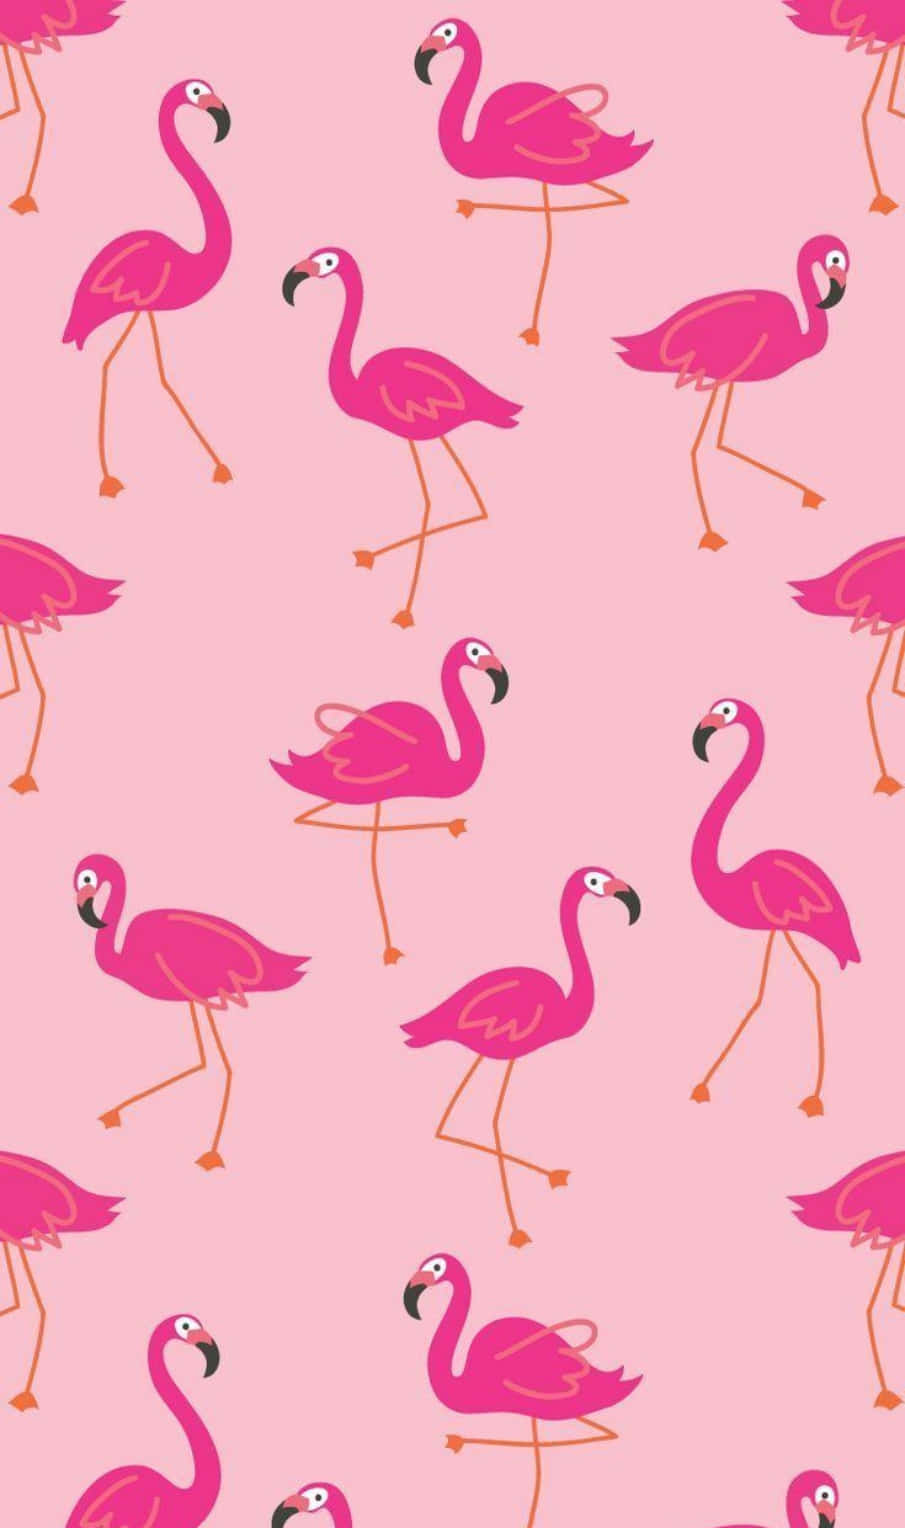 A Flock of Vibrant Pink Flamingos Wallpaper